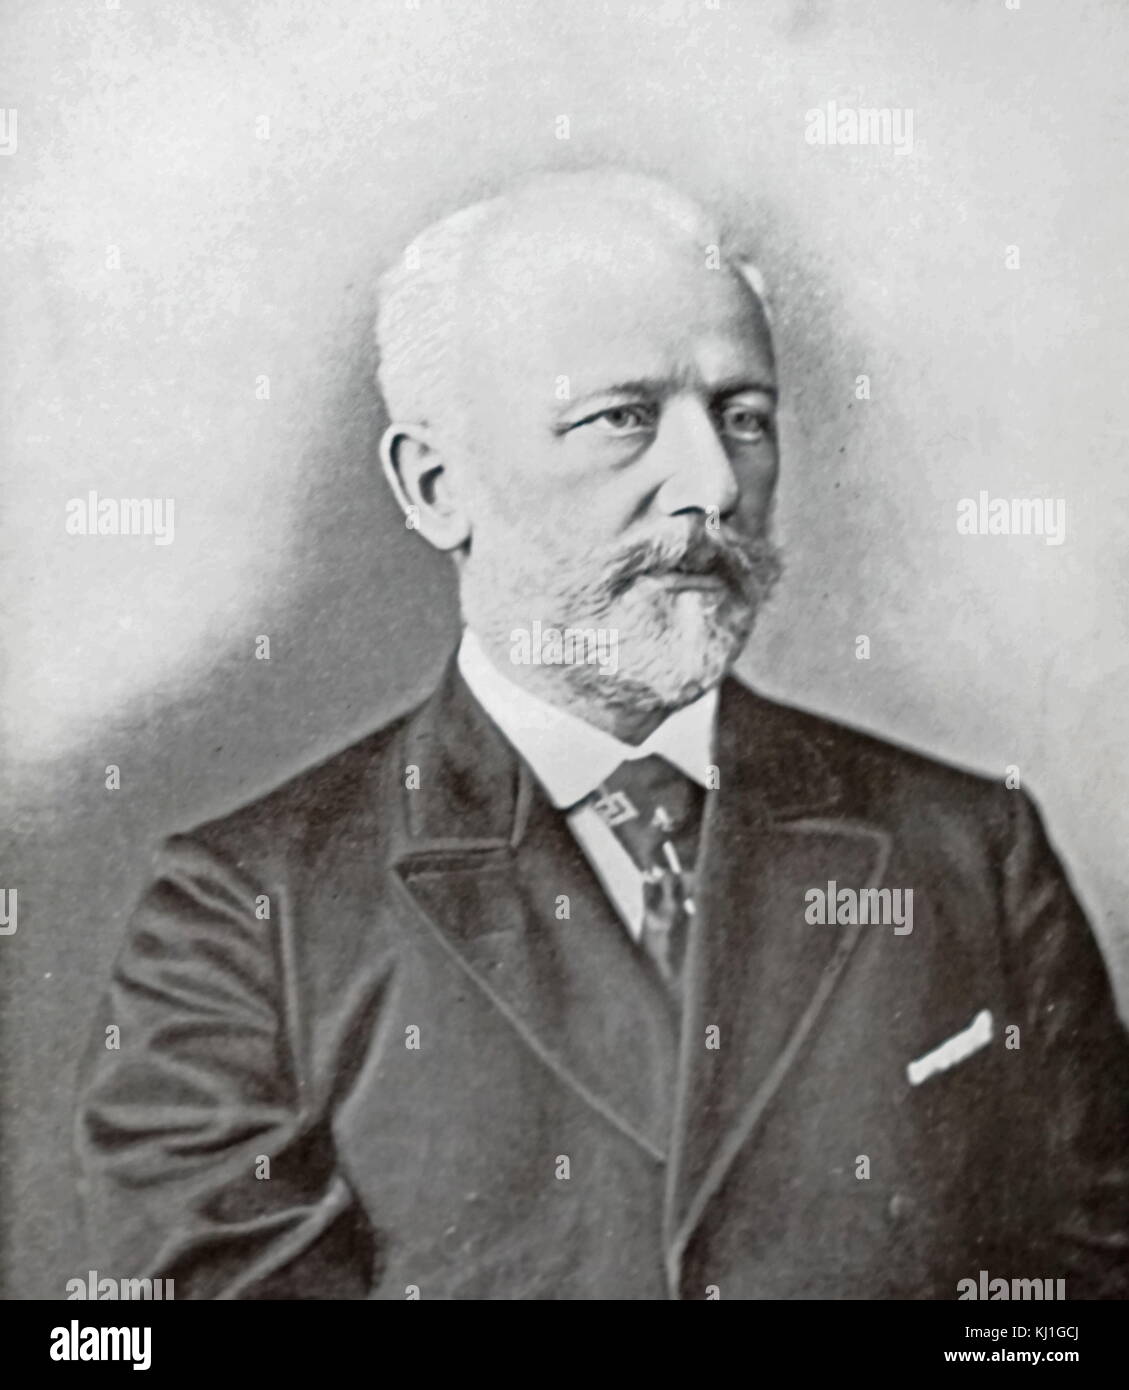 Pjotr Iljitsch Tschaikowski (1840-1893), Peter Iljitsch Tschaikowsky, war ein russischer Komponist der späten Romantik, deren Werke unter den beliebtesten Musik im klassischen Repertoire sind Stockfoto